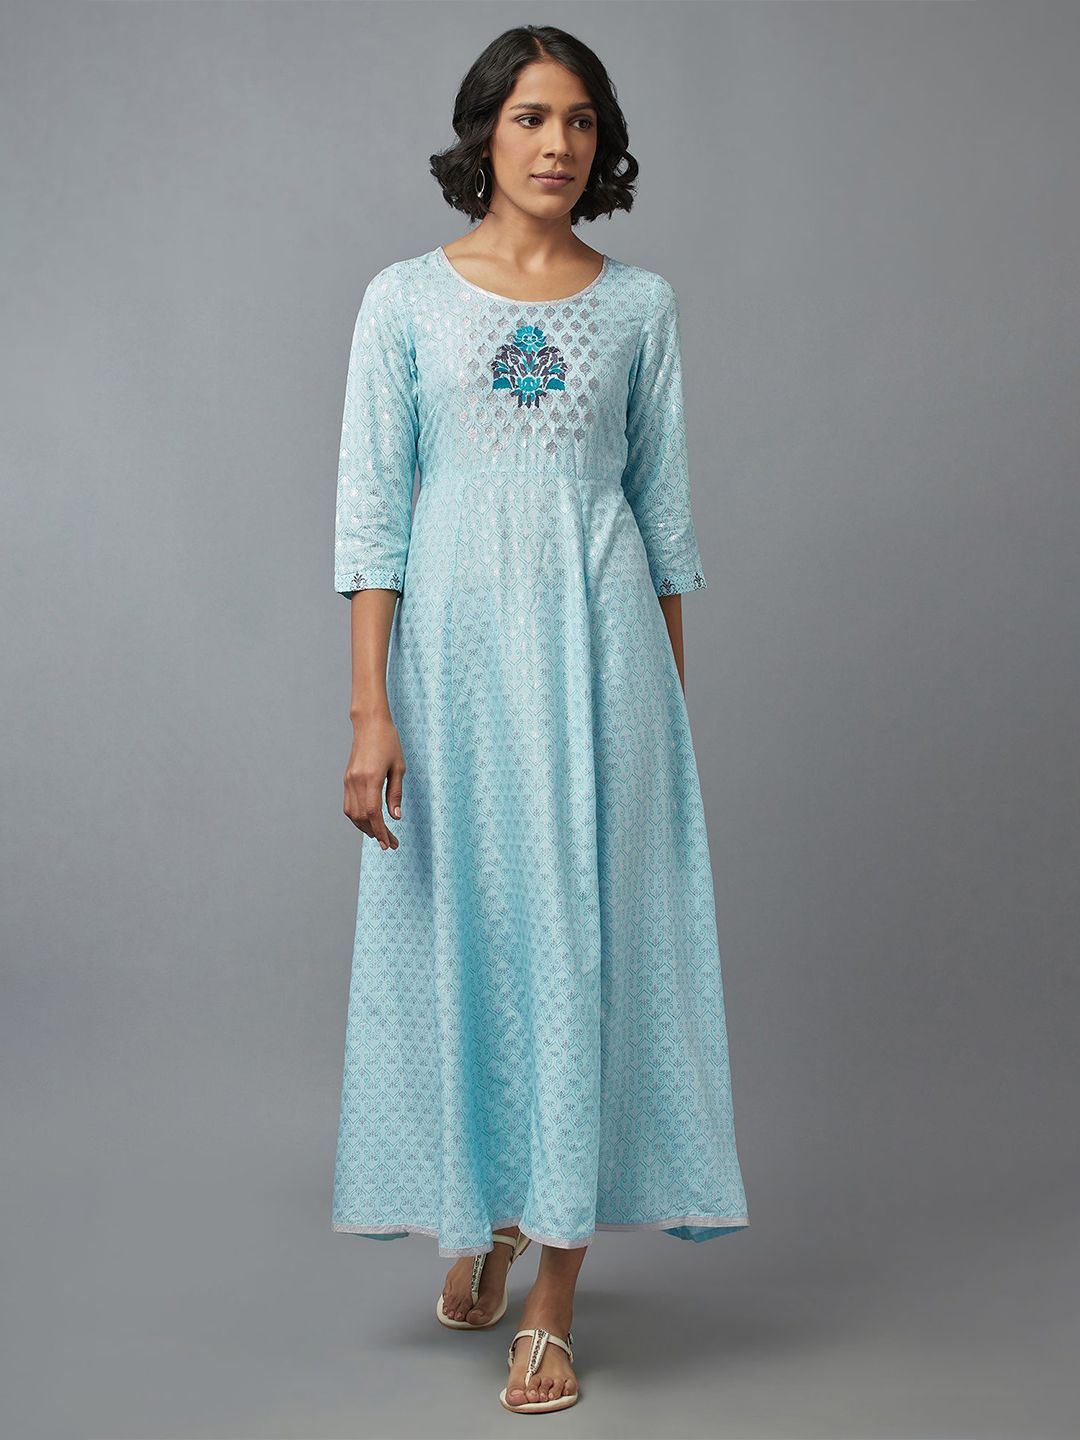 AURELIA Blue Ethnic Motifs Printed Maxi Dress Price in India